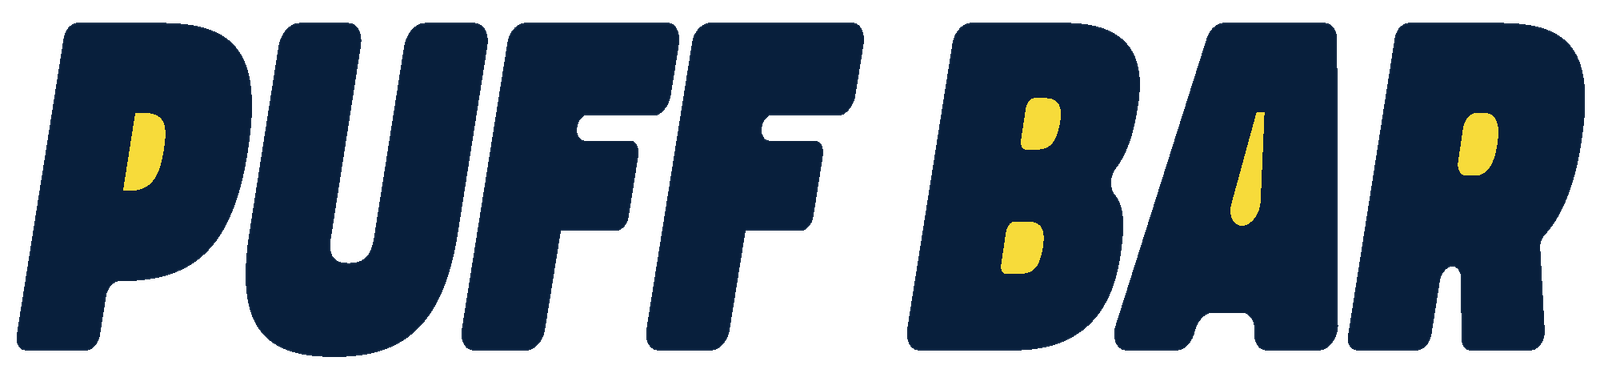 Puff Bar-logo i mørkeblått og gult med fet skrift